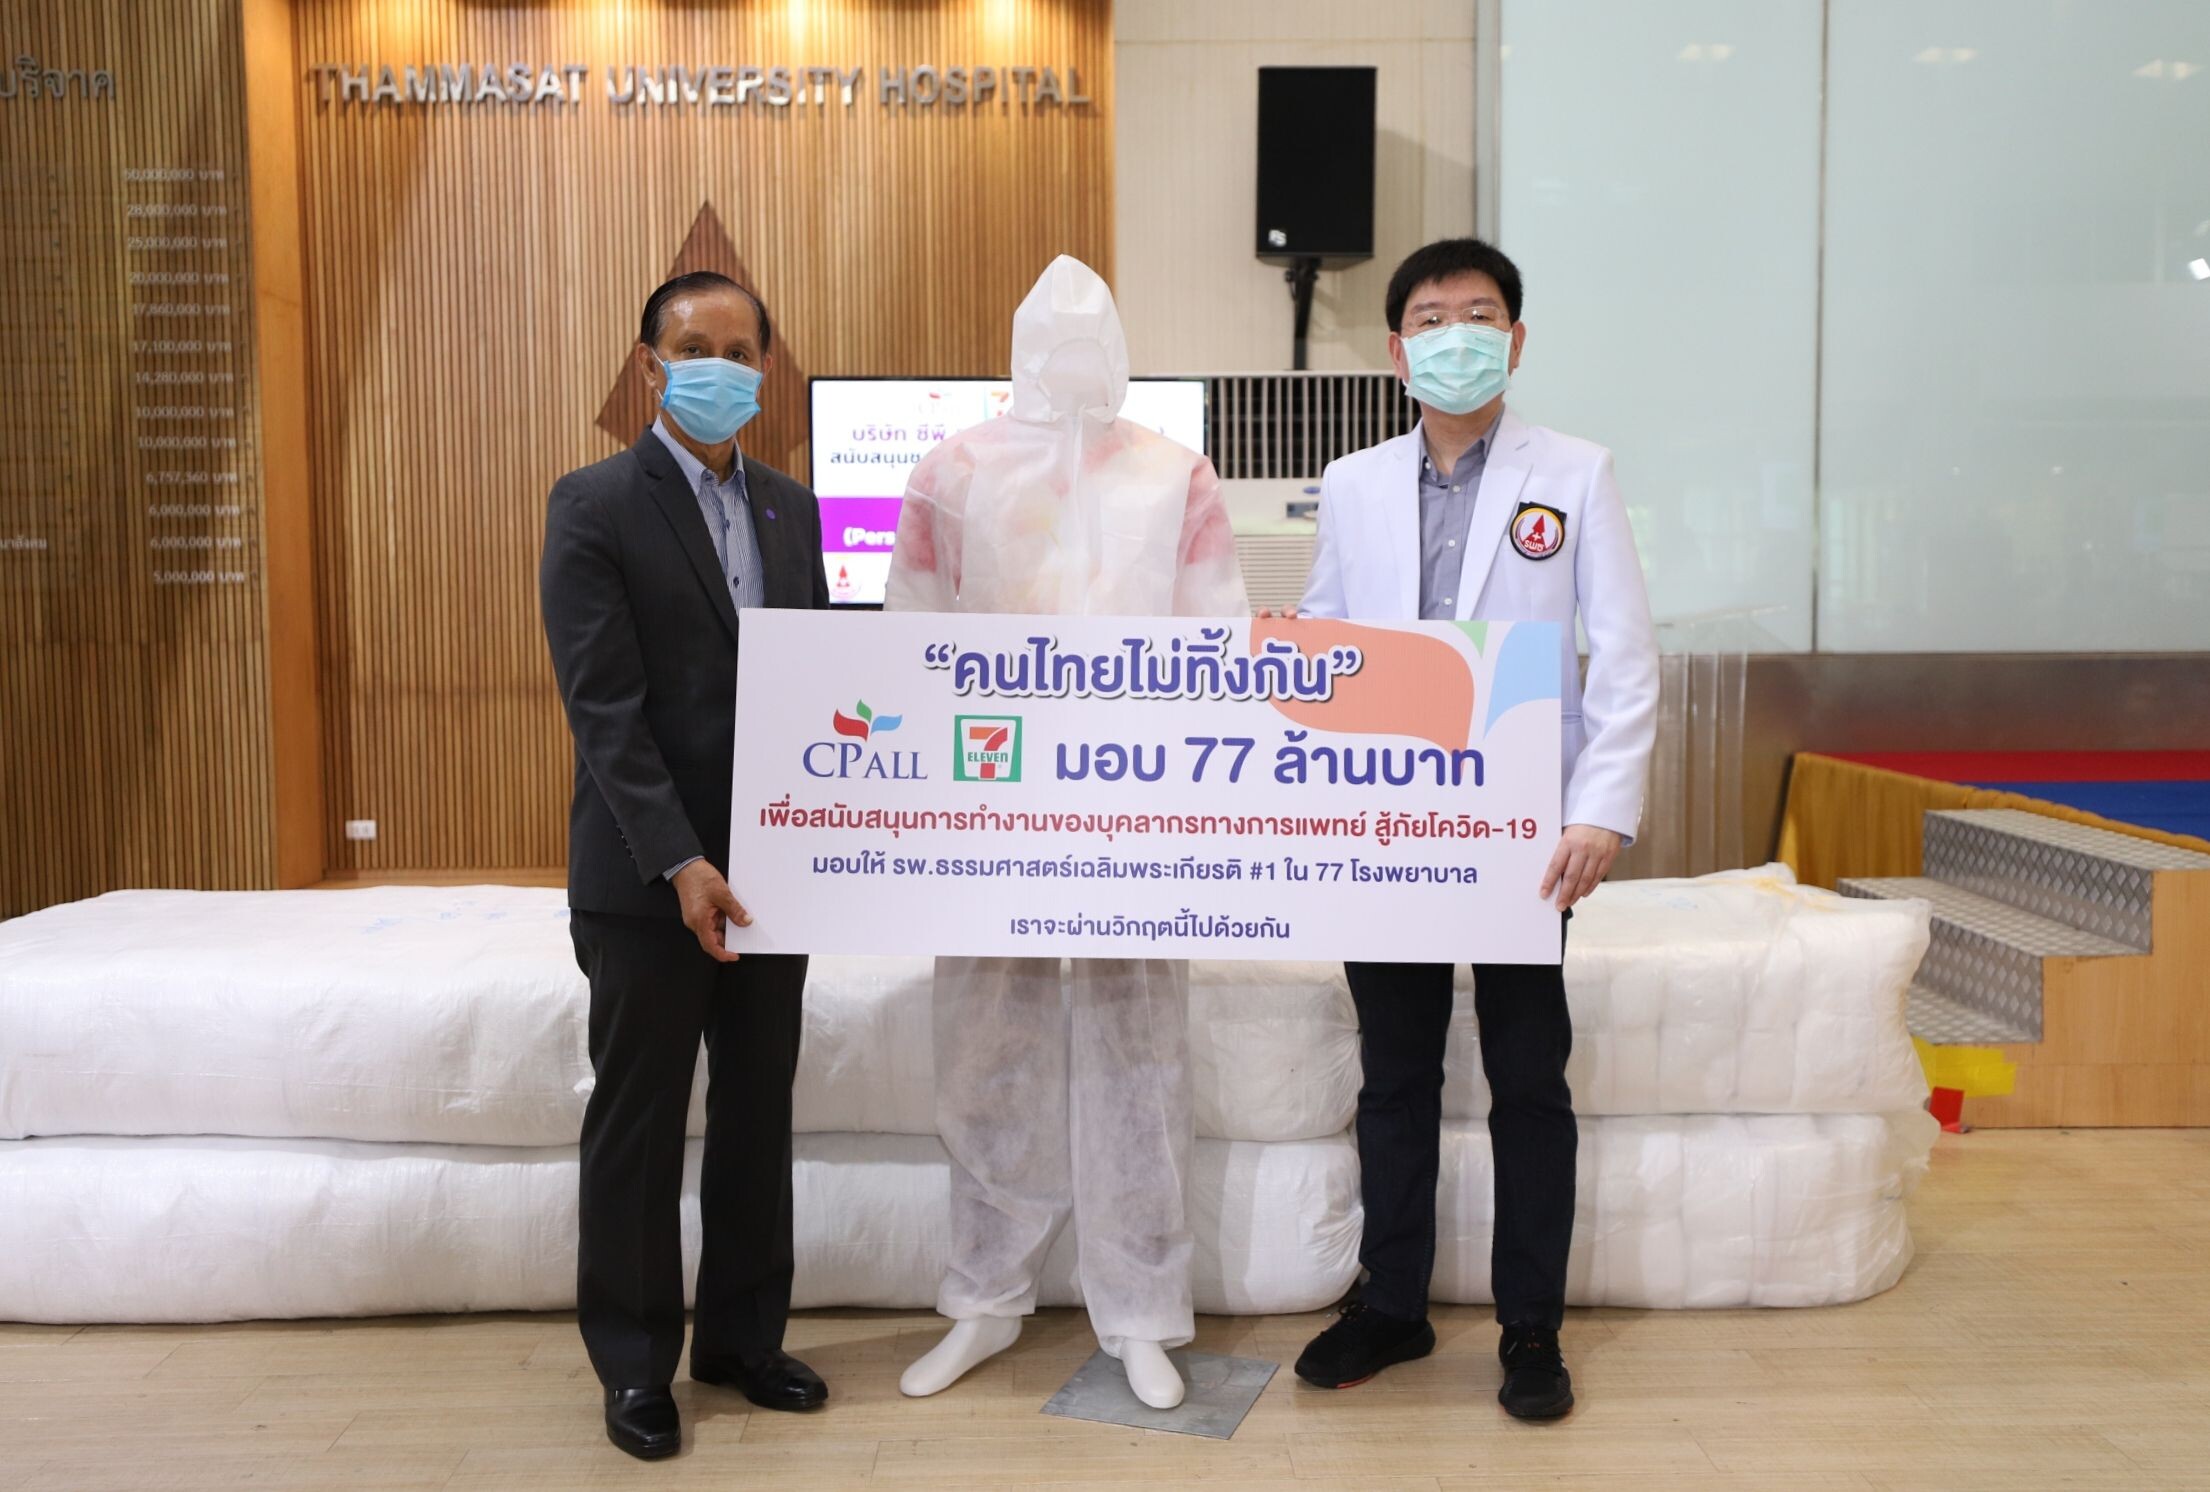 “ซีพี ออลล์” ผุดโครงการ “คนไทยไม่ทิ้งกัน” มอบ 77 ล้านบาทให้กับ 77 รพ.ทั่วประเทศ สู้ภัยไวรัส COVID-19